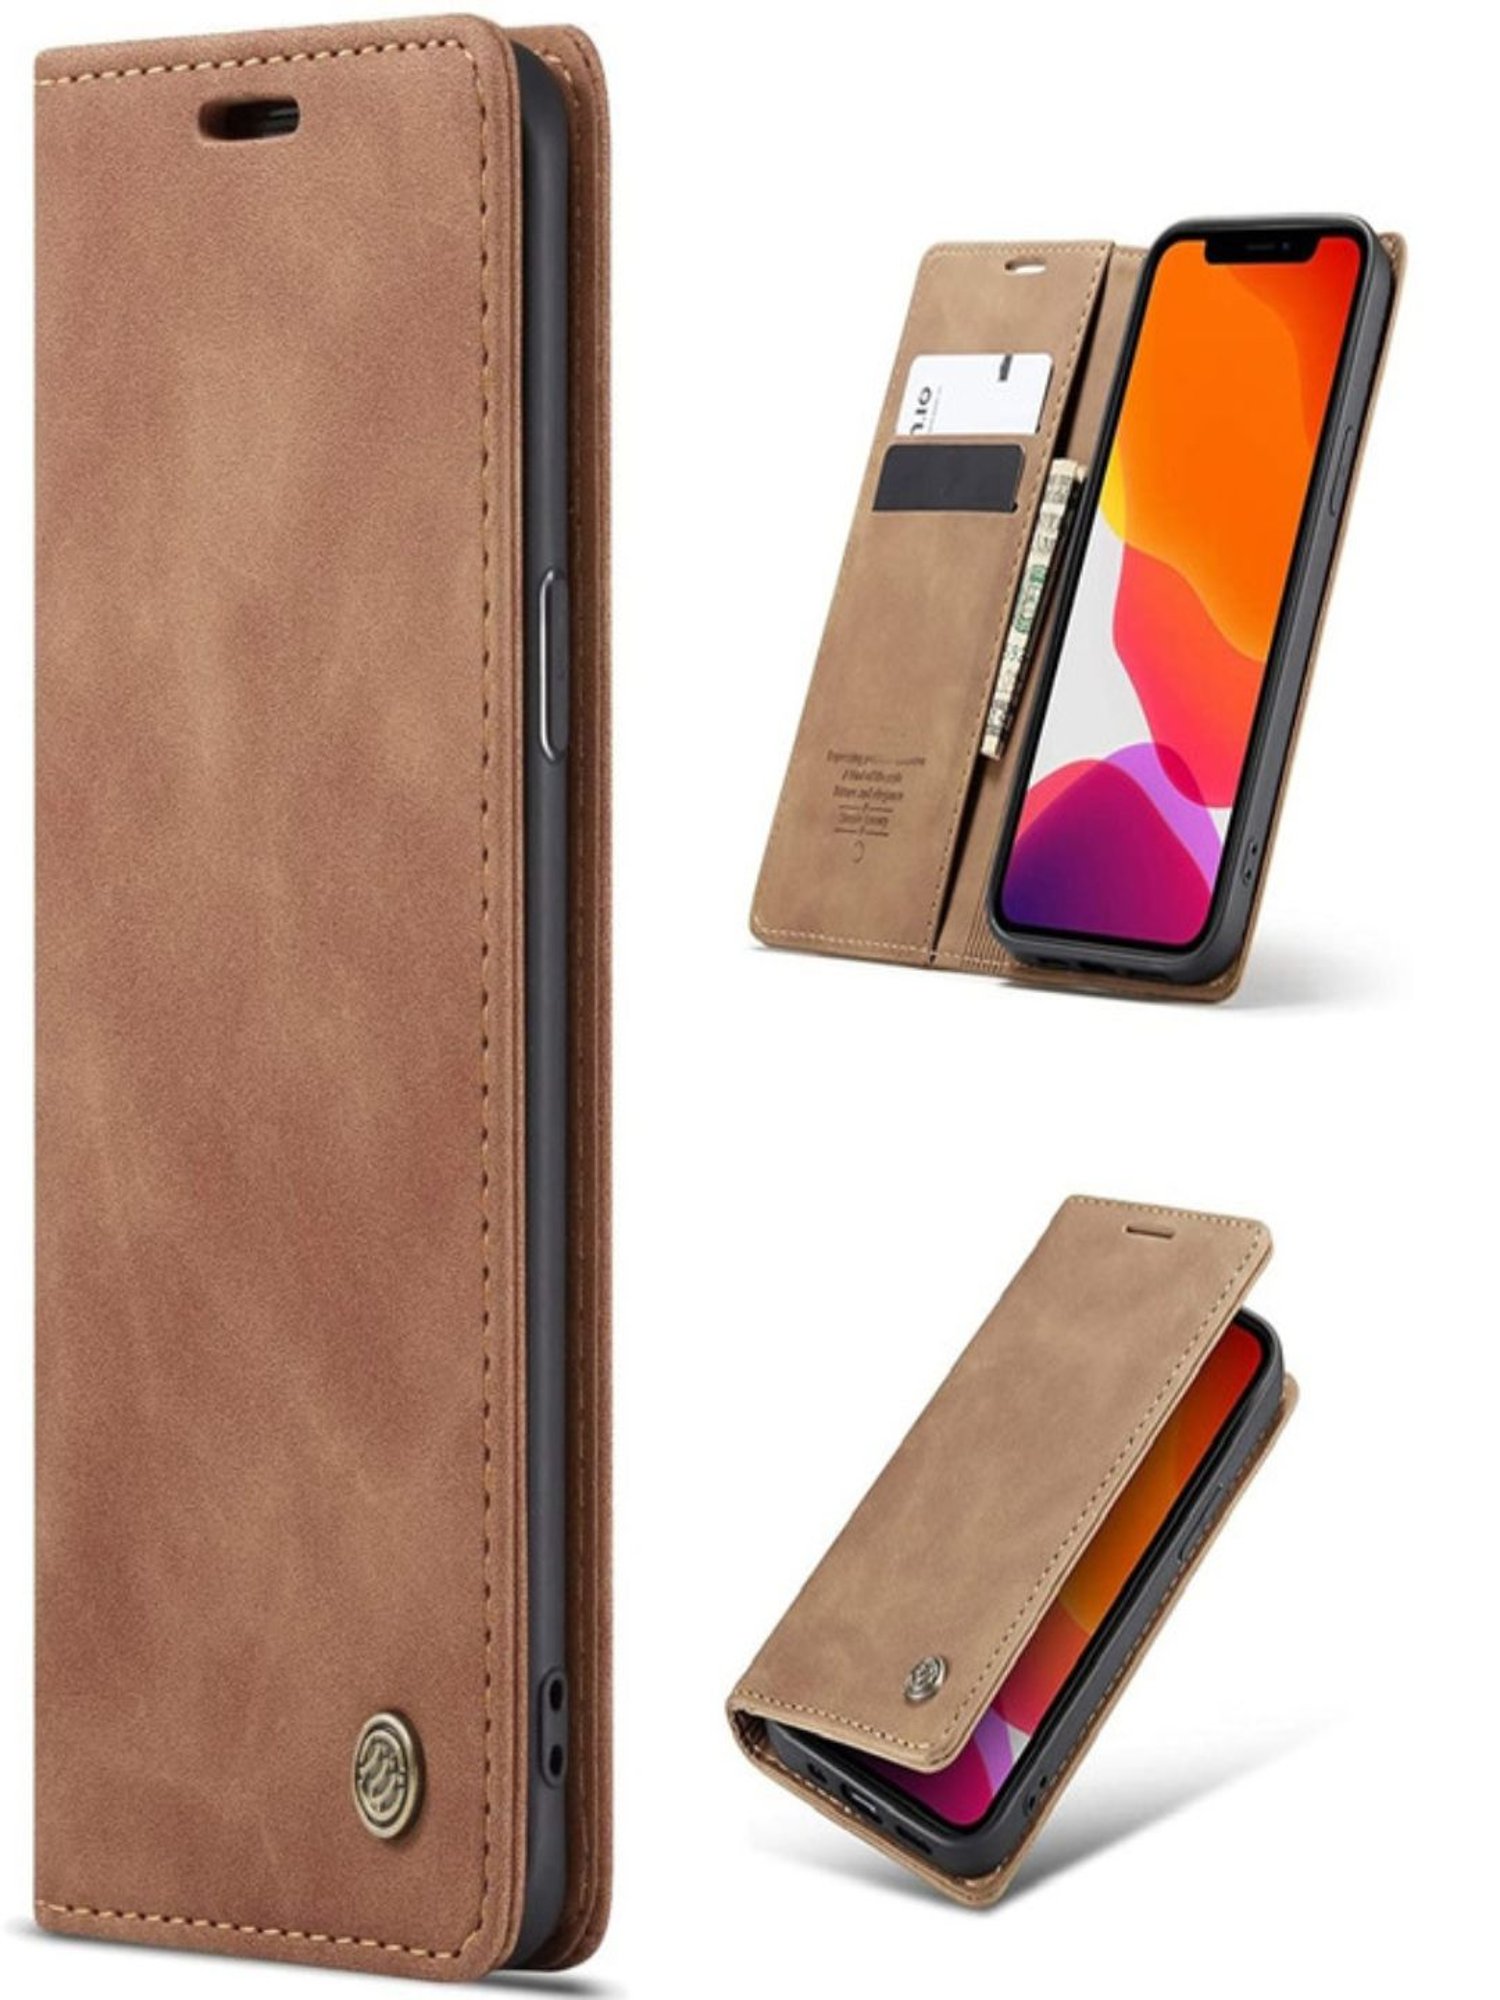 Buy Slugabed Flip Cover Back Case for Apple iPhone 11, Leather Finish, Inbuilt Stand & Pockets